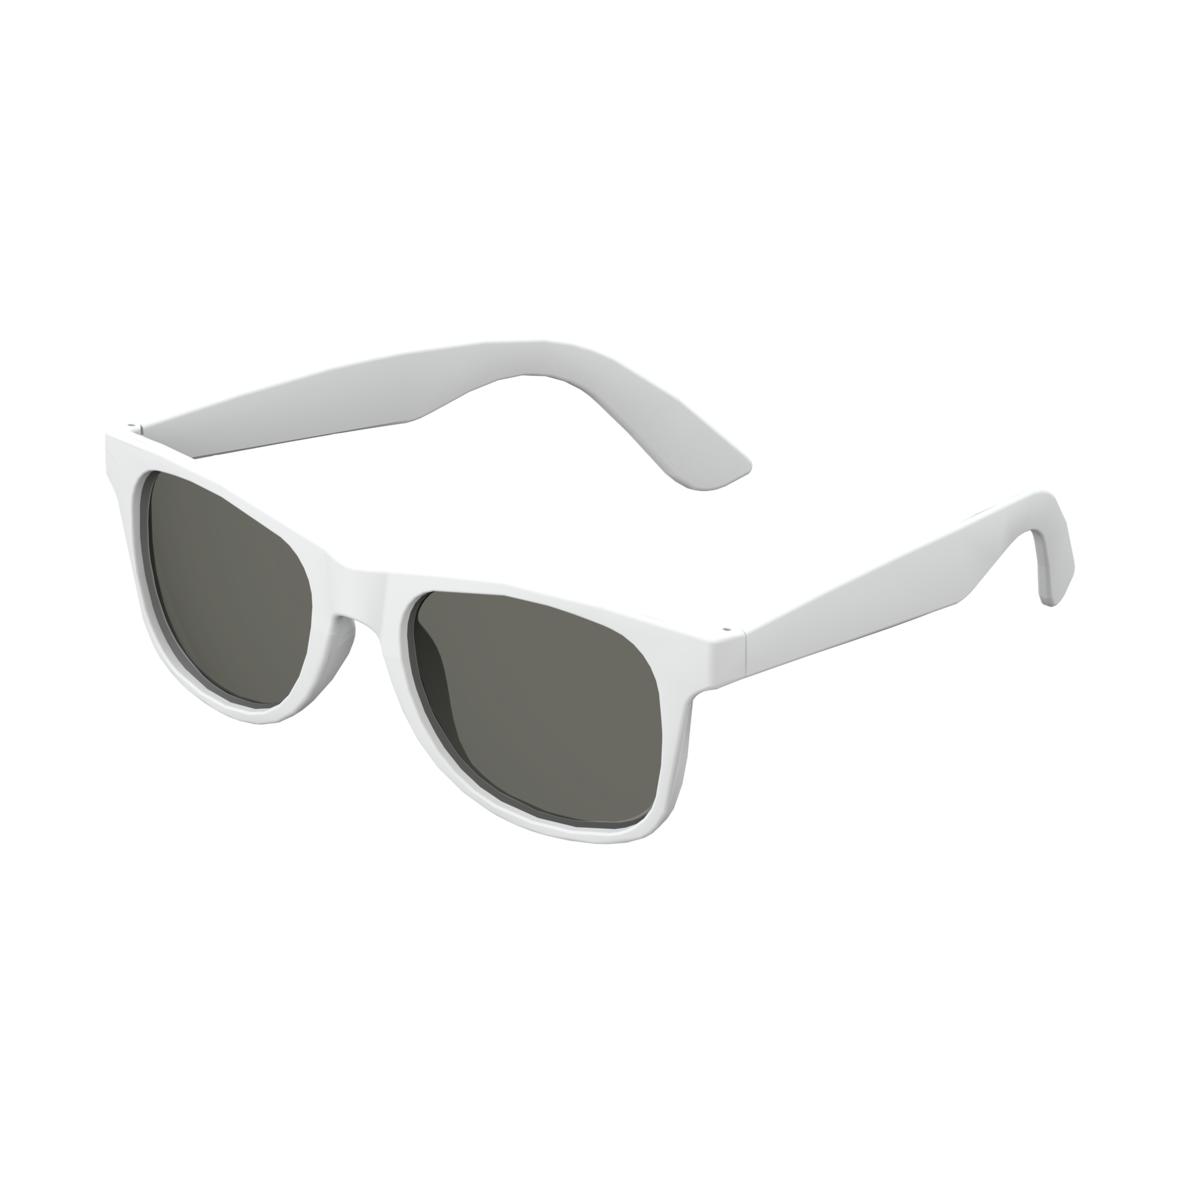 EcoWave Sunglasses - Hawkshead - Pett